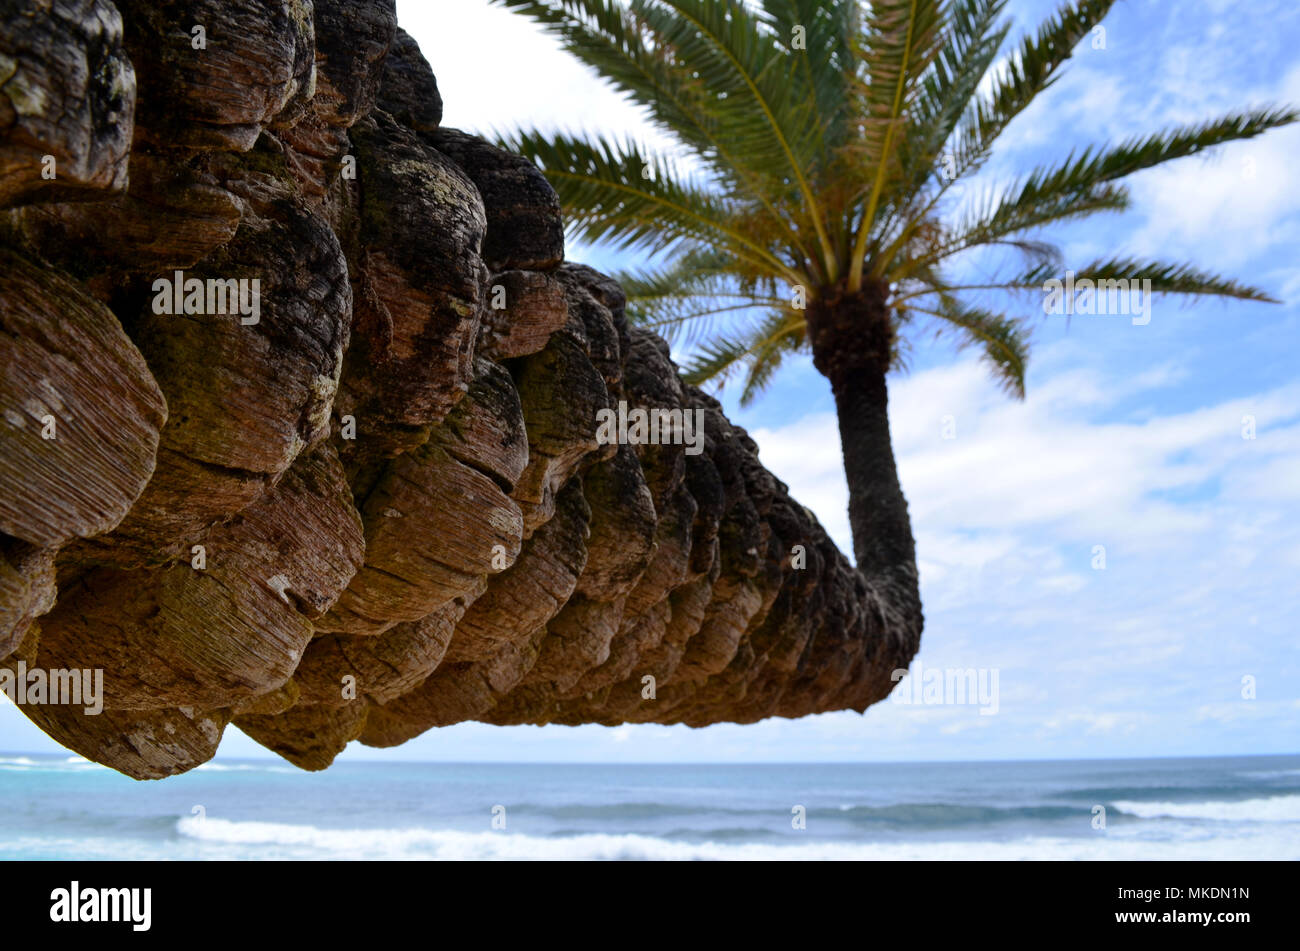 Palm tree crescono in una strana direzione esterna verso l'oceano. Prese sulla Northshore area di Oahu Hawaii USA. Foto Stock